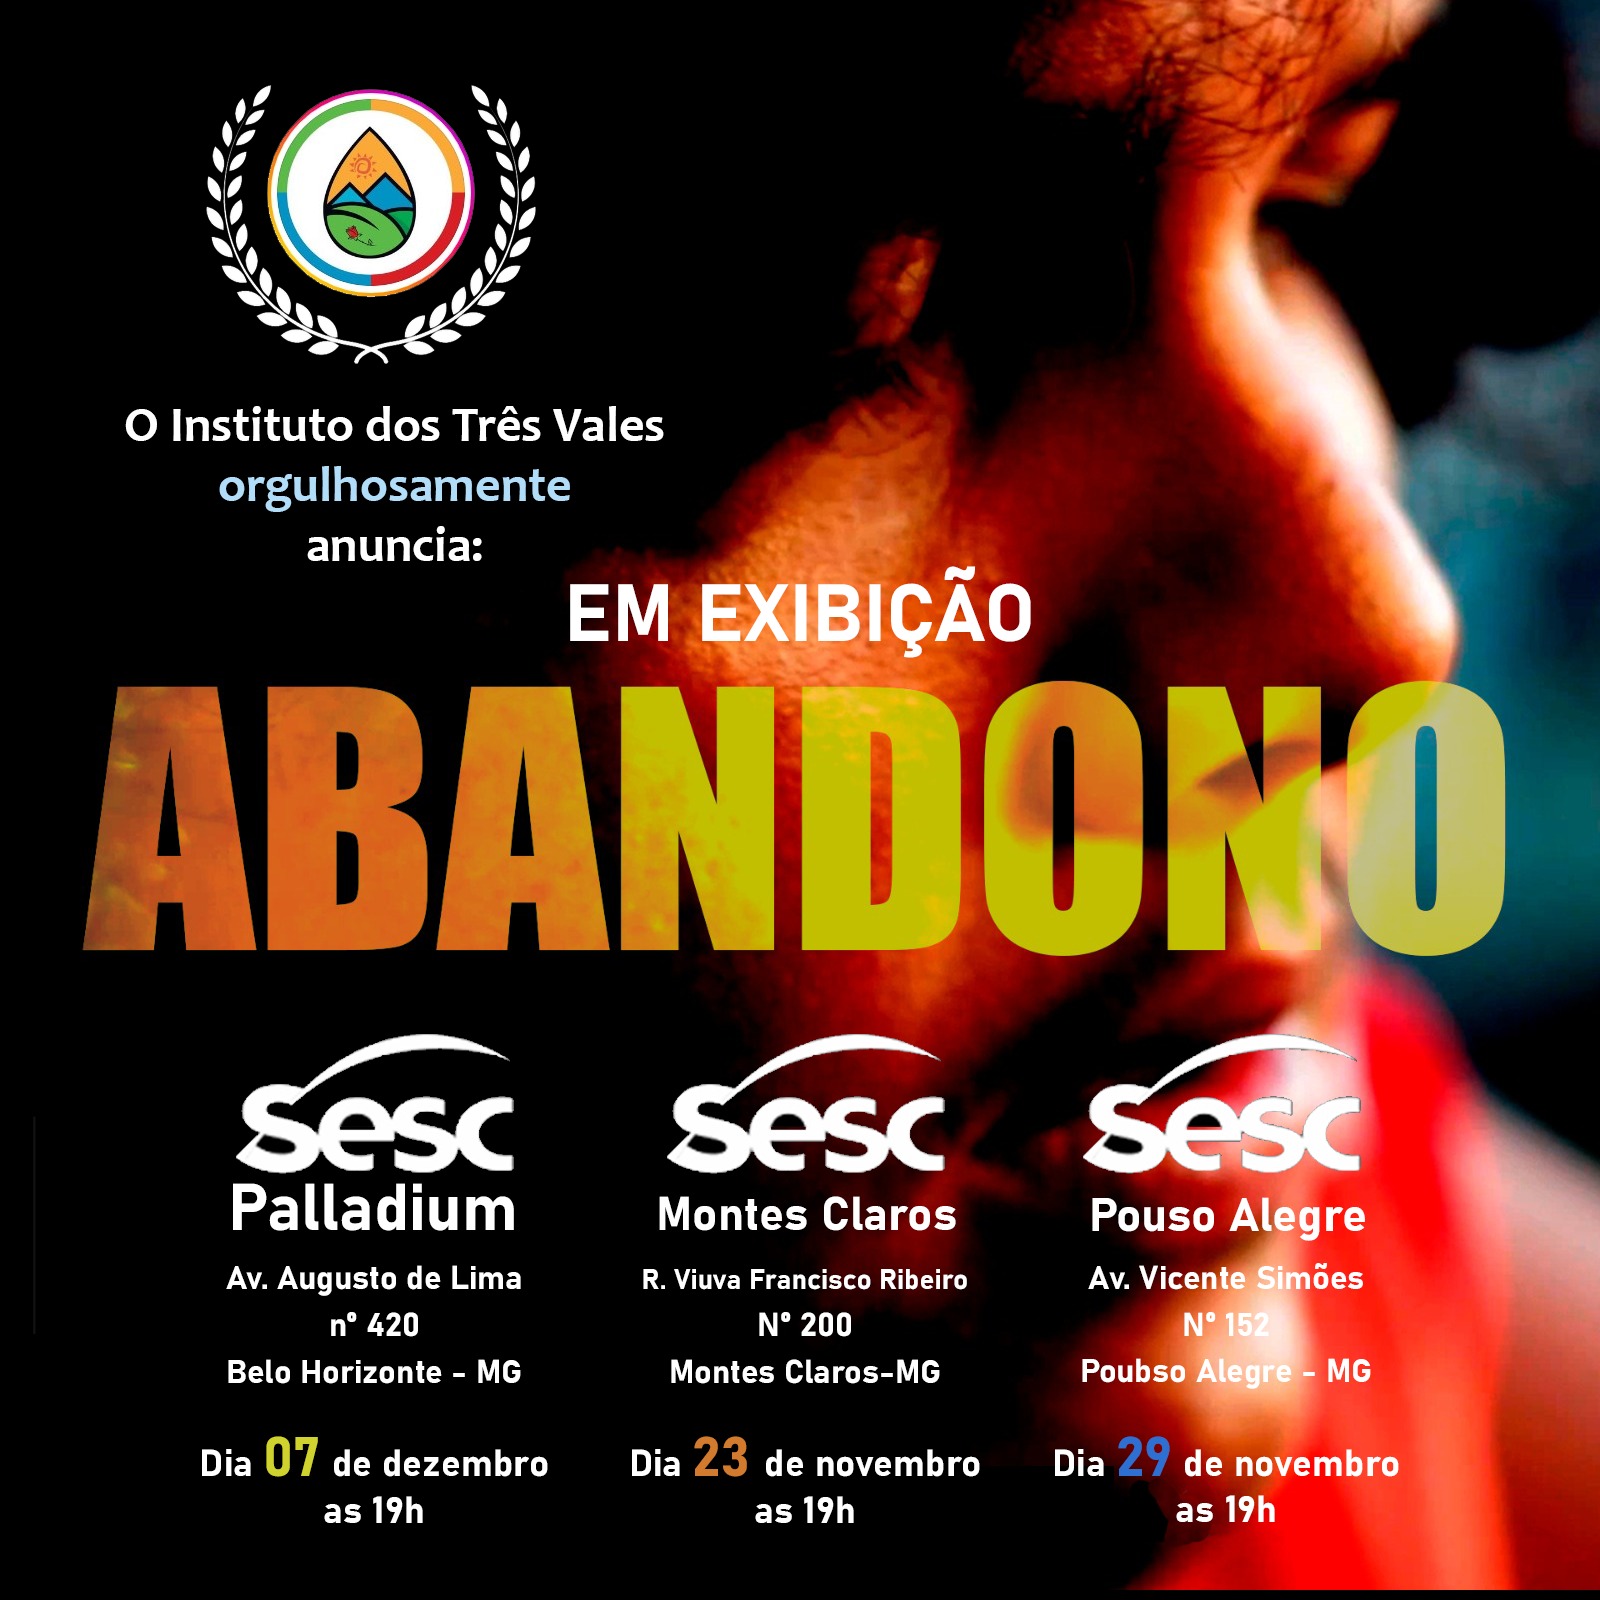 Filme de Teófilo Otoni “Abandono” está em exibição no Sesc Palladium e representa o cinema estadual no cenário nacional